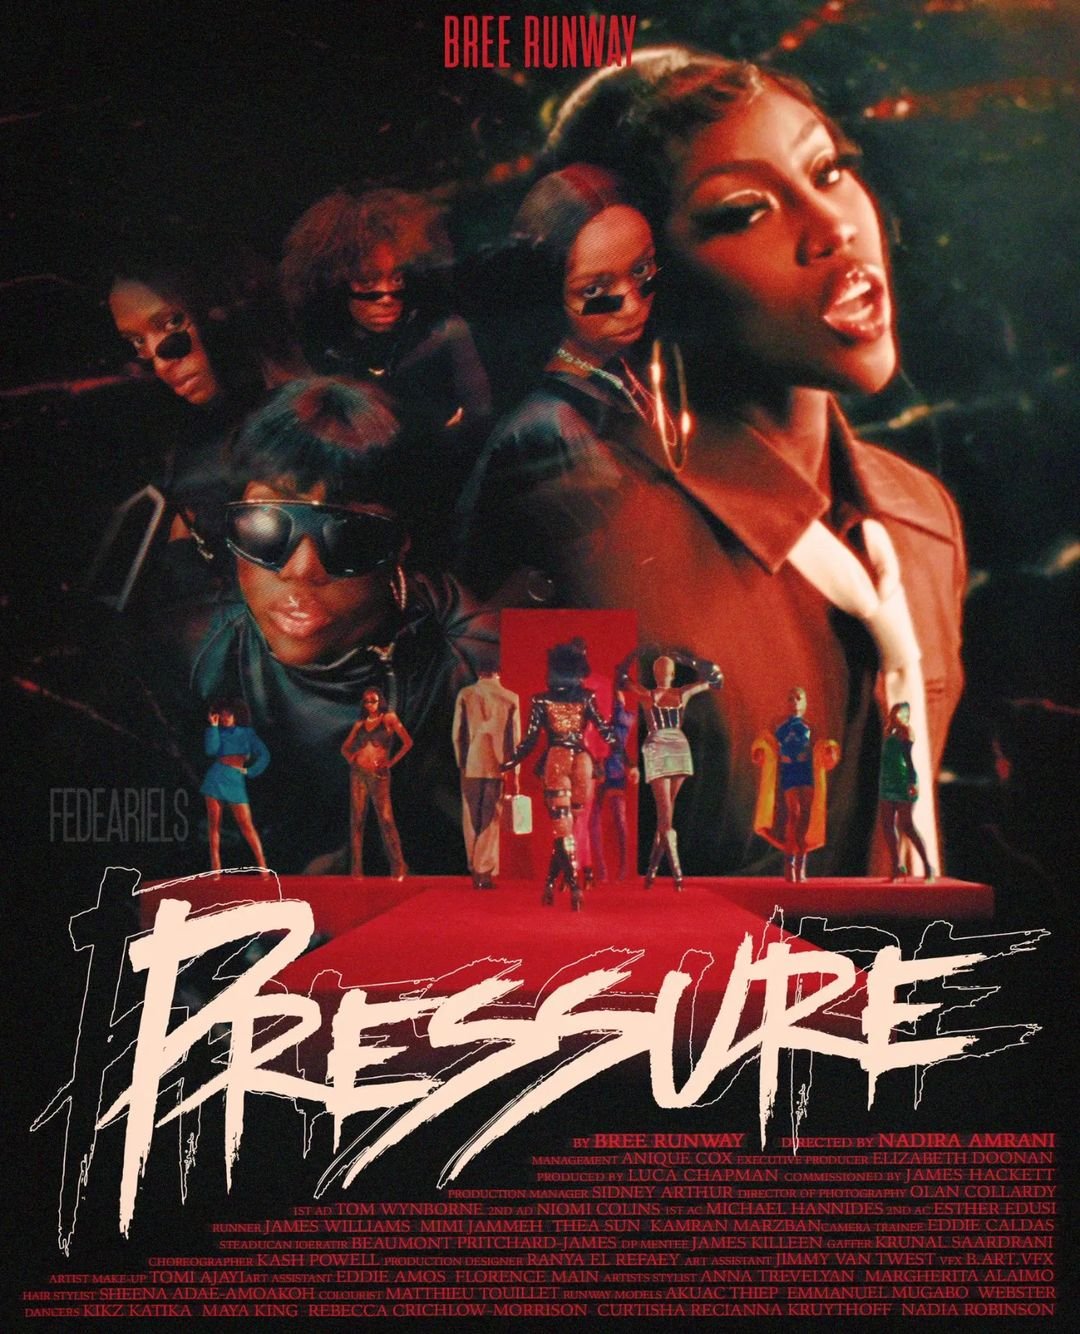 Bree Runway 'Pressure'